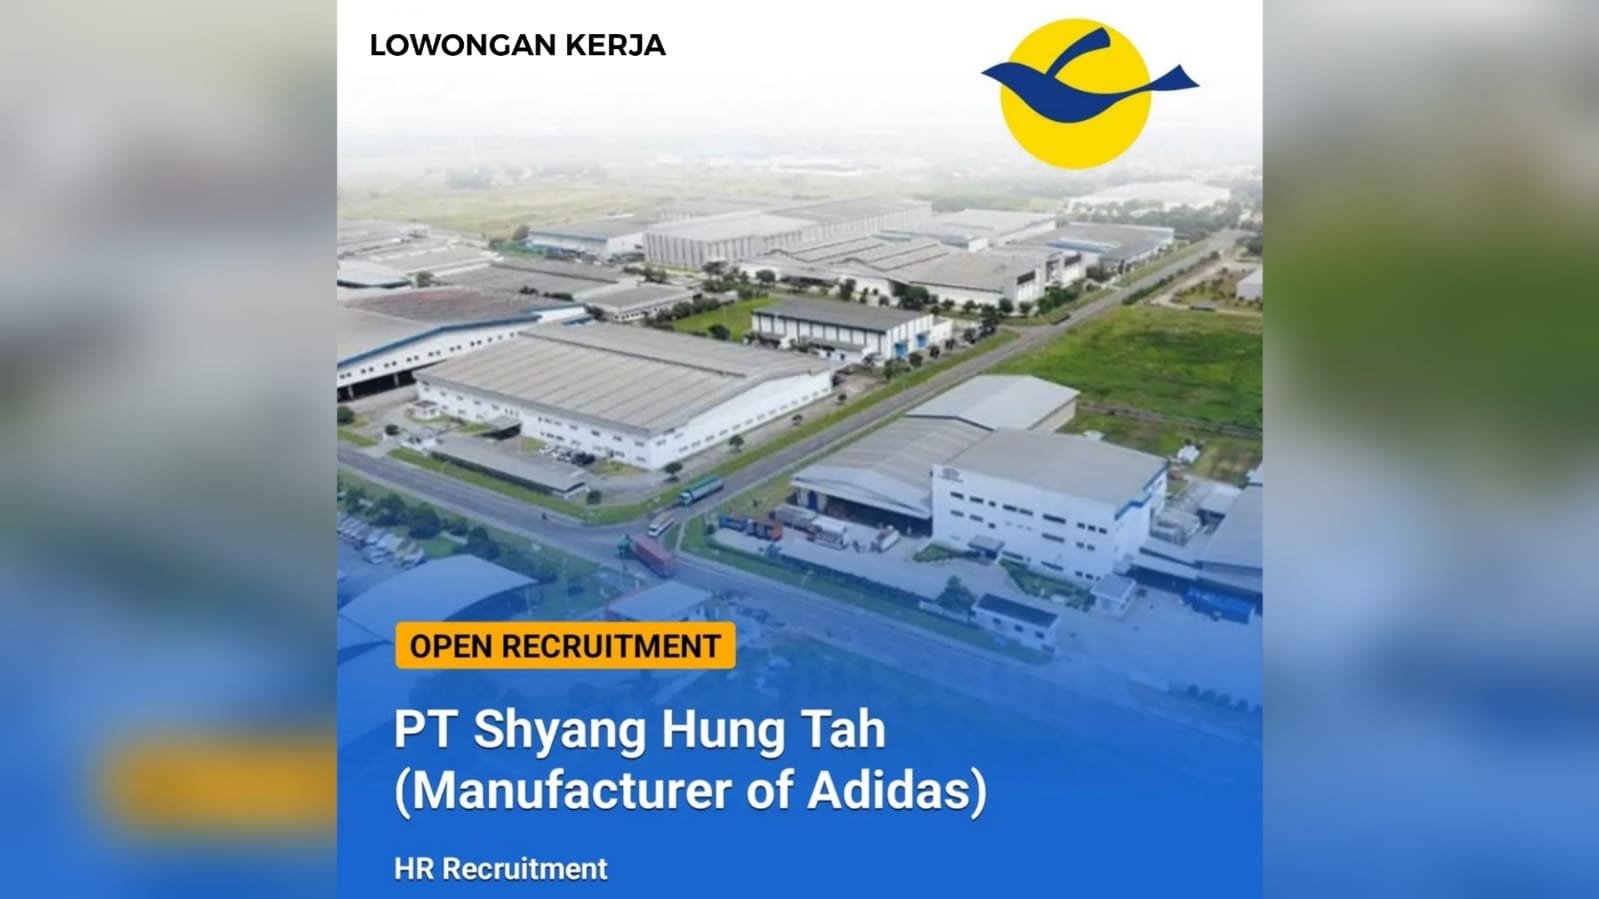 Lowongan Kerja Terbaru PT Shyang Hung Tah (Manufacturer of Adidas) Fresh Graduate Lulusan S1 atau Pengalaman